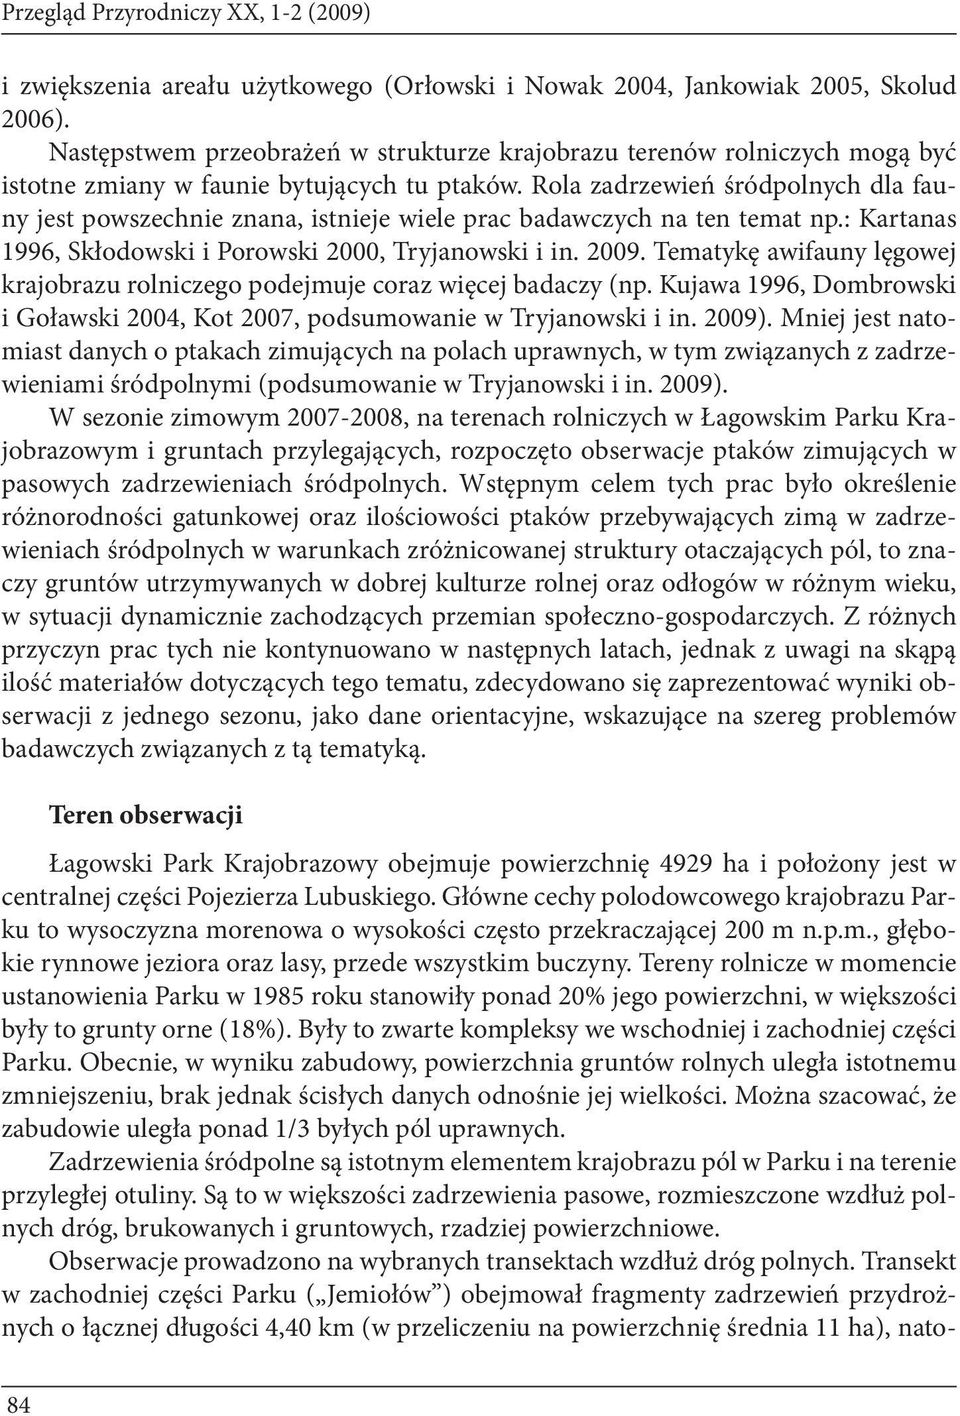 Rola zadrzewień śródpolnych dla fauny jest powszechnie znana, istnieje wiele prac badawczych na ten temat np.: Kartanas 1996, Skłodowski i Porowski 2000, Tryjanowski i in. 2009.